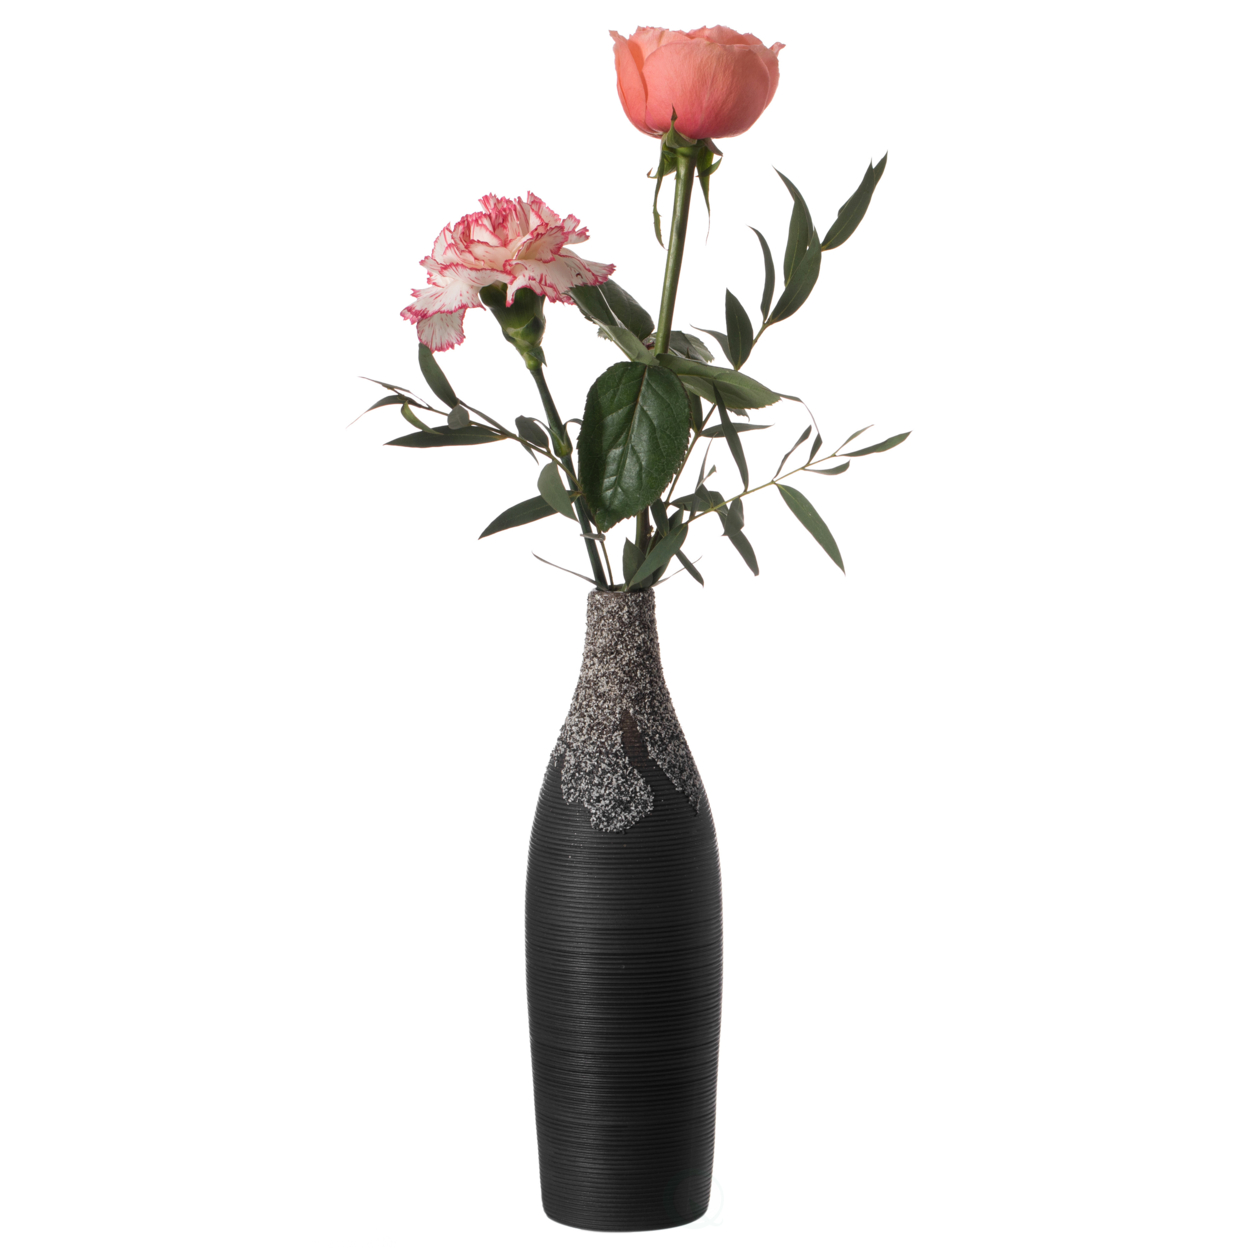 Modern Decorative Ceramic Table Vase Ripped Design Bottle Shape Flower Holder - Black